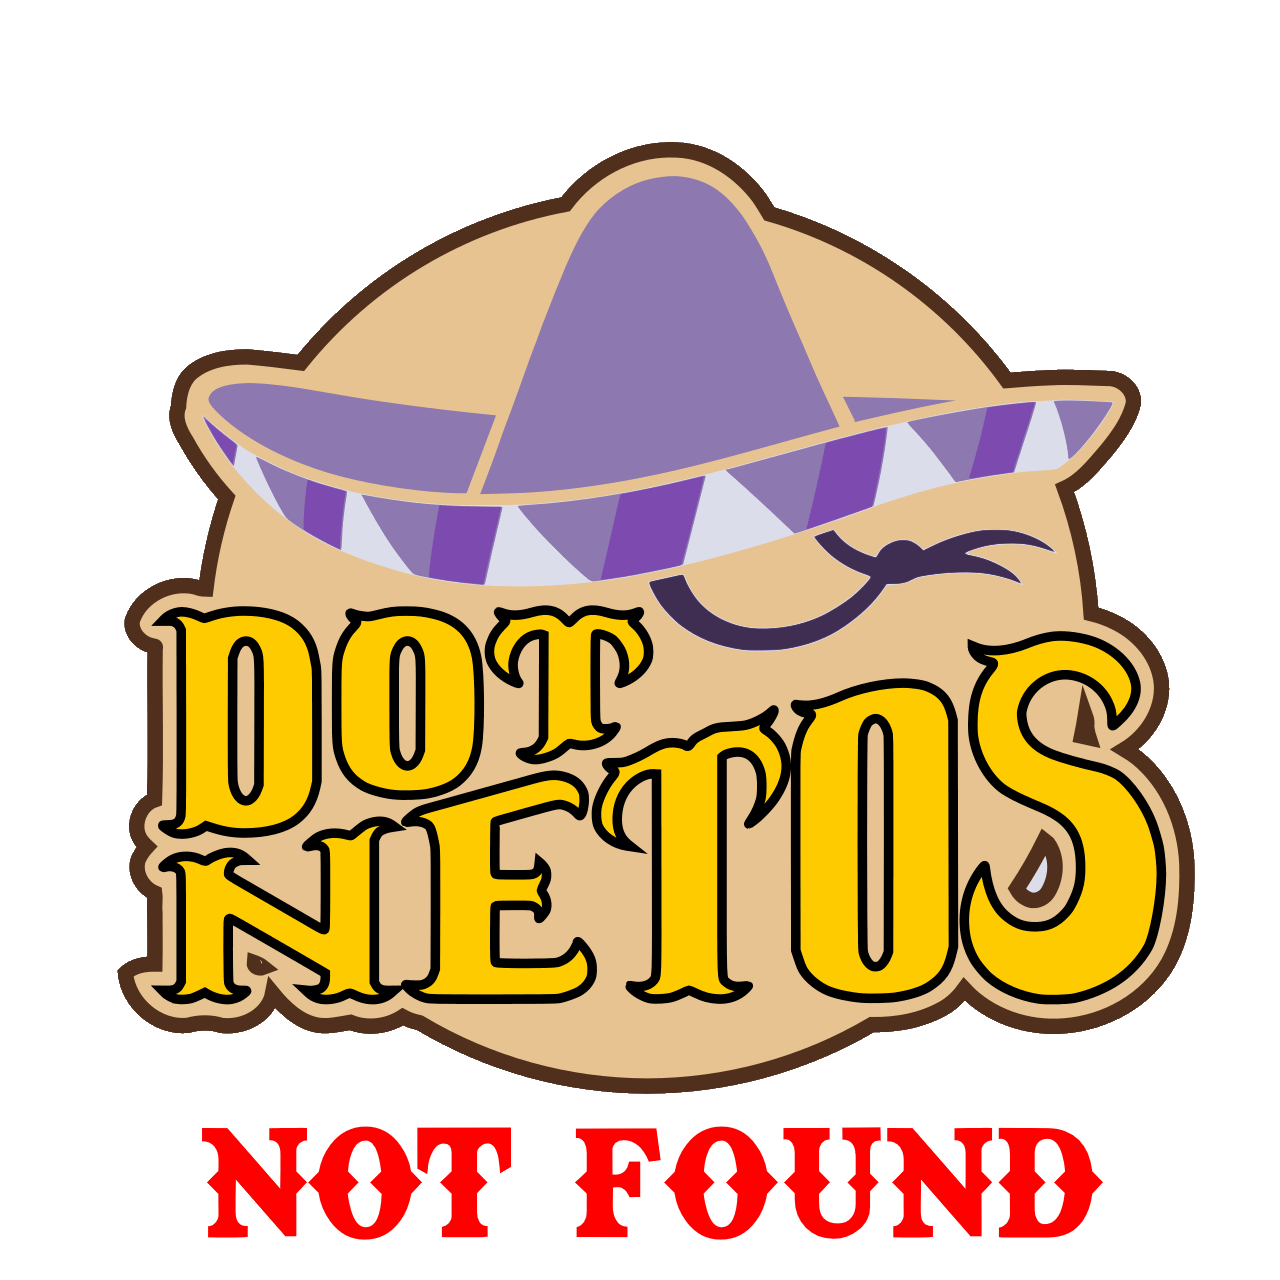 Not found